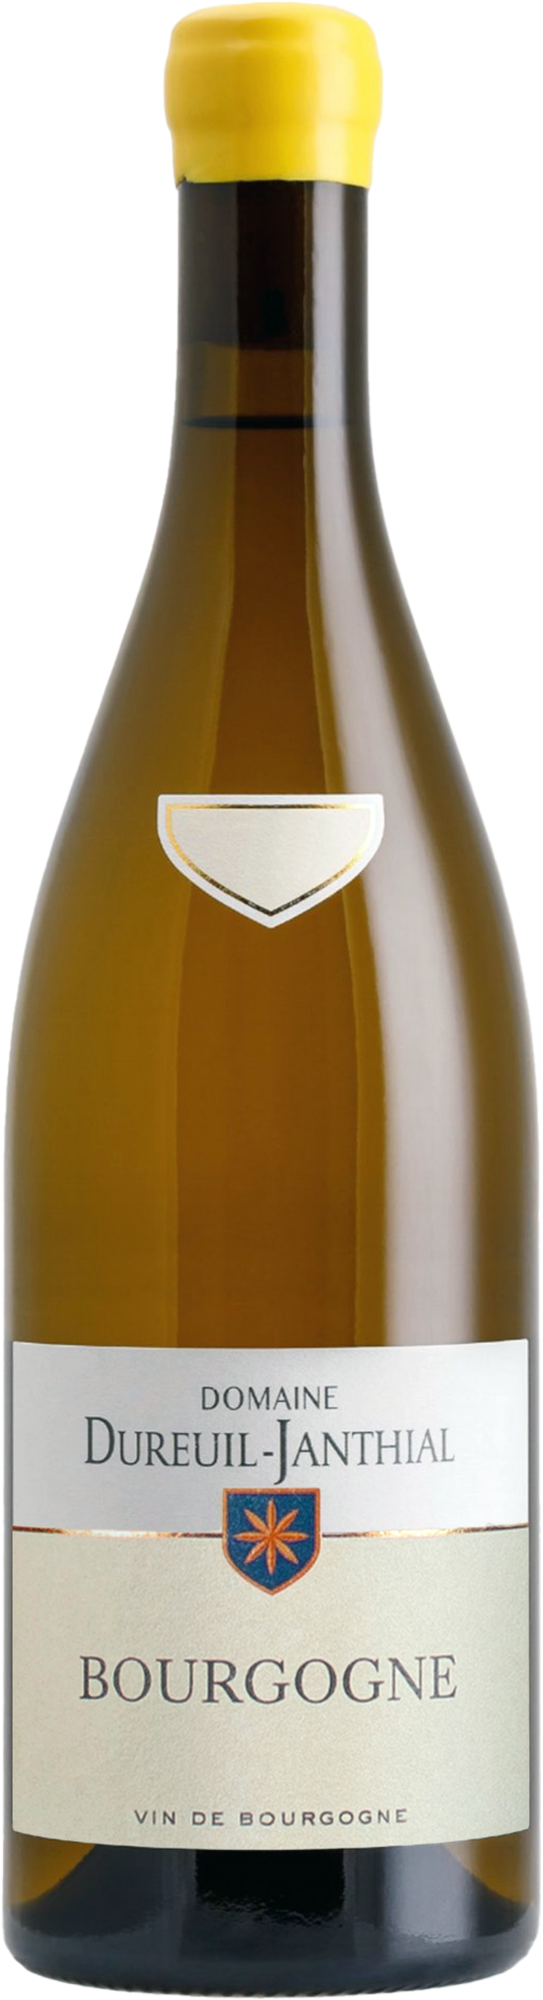 Domaine Vincent Dureuil-Janthial  Bourgogne Blanc 2019